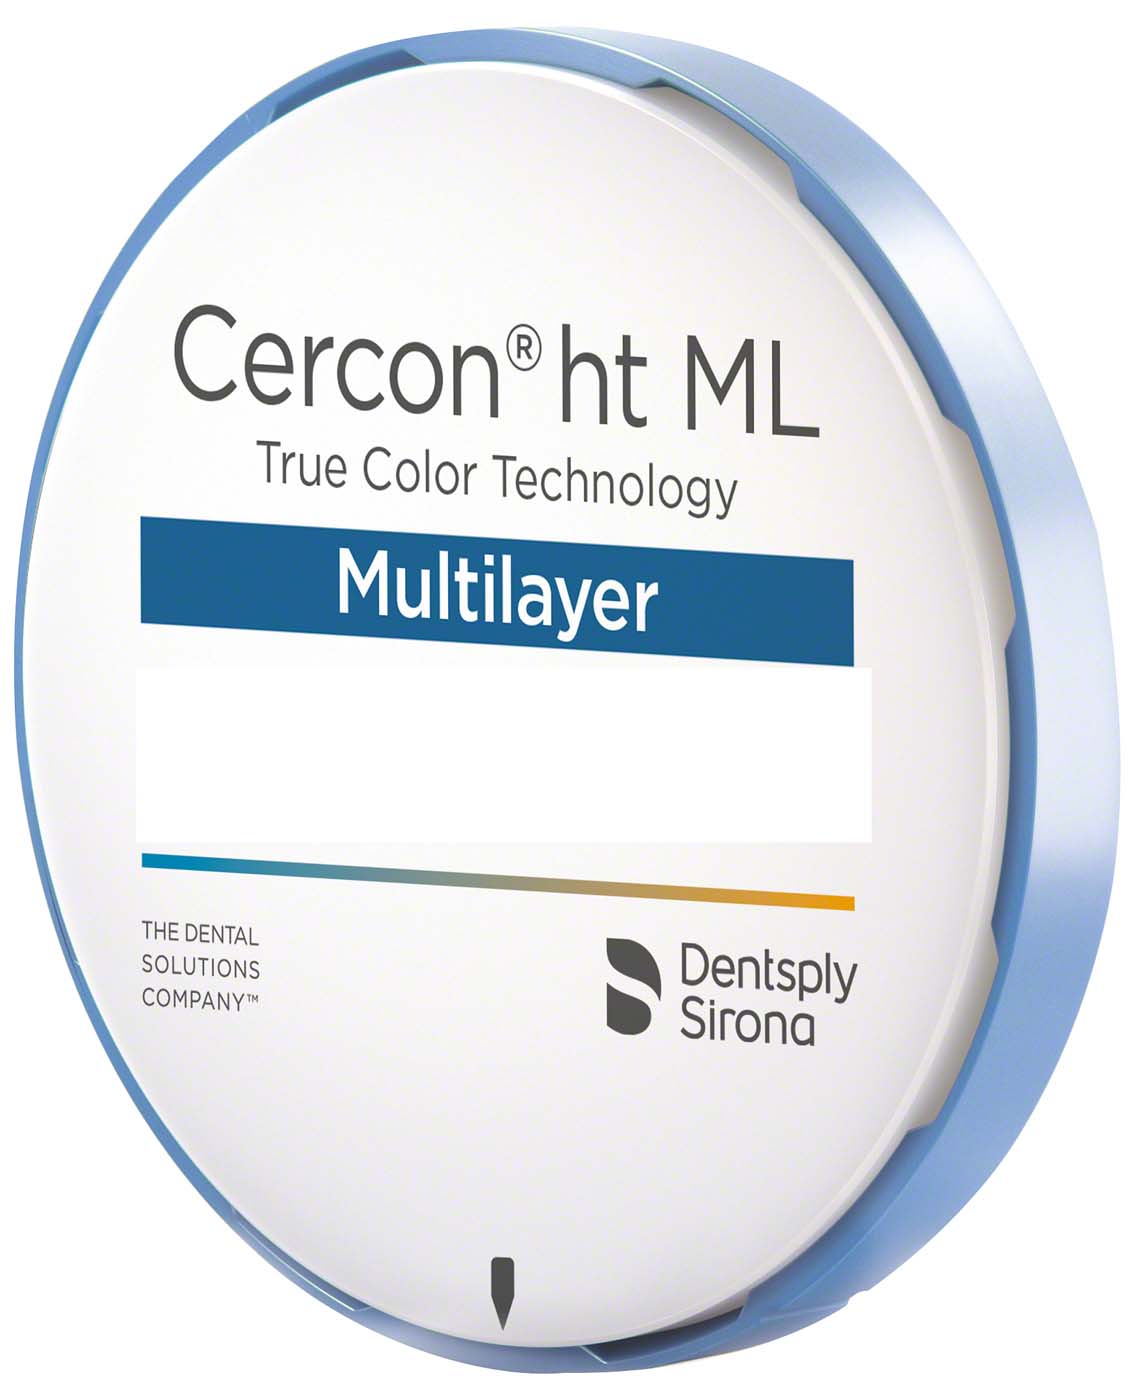 Cercon® ht ML Dentsply Sirona